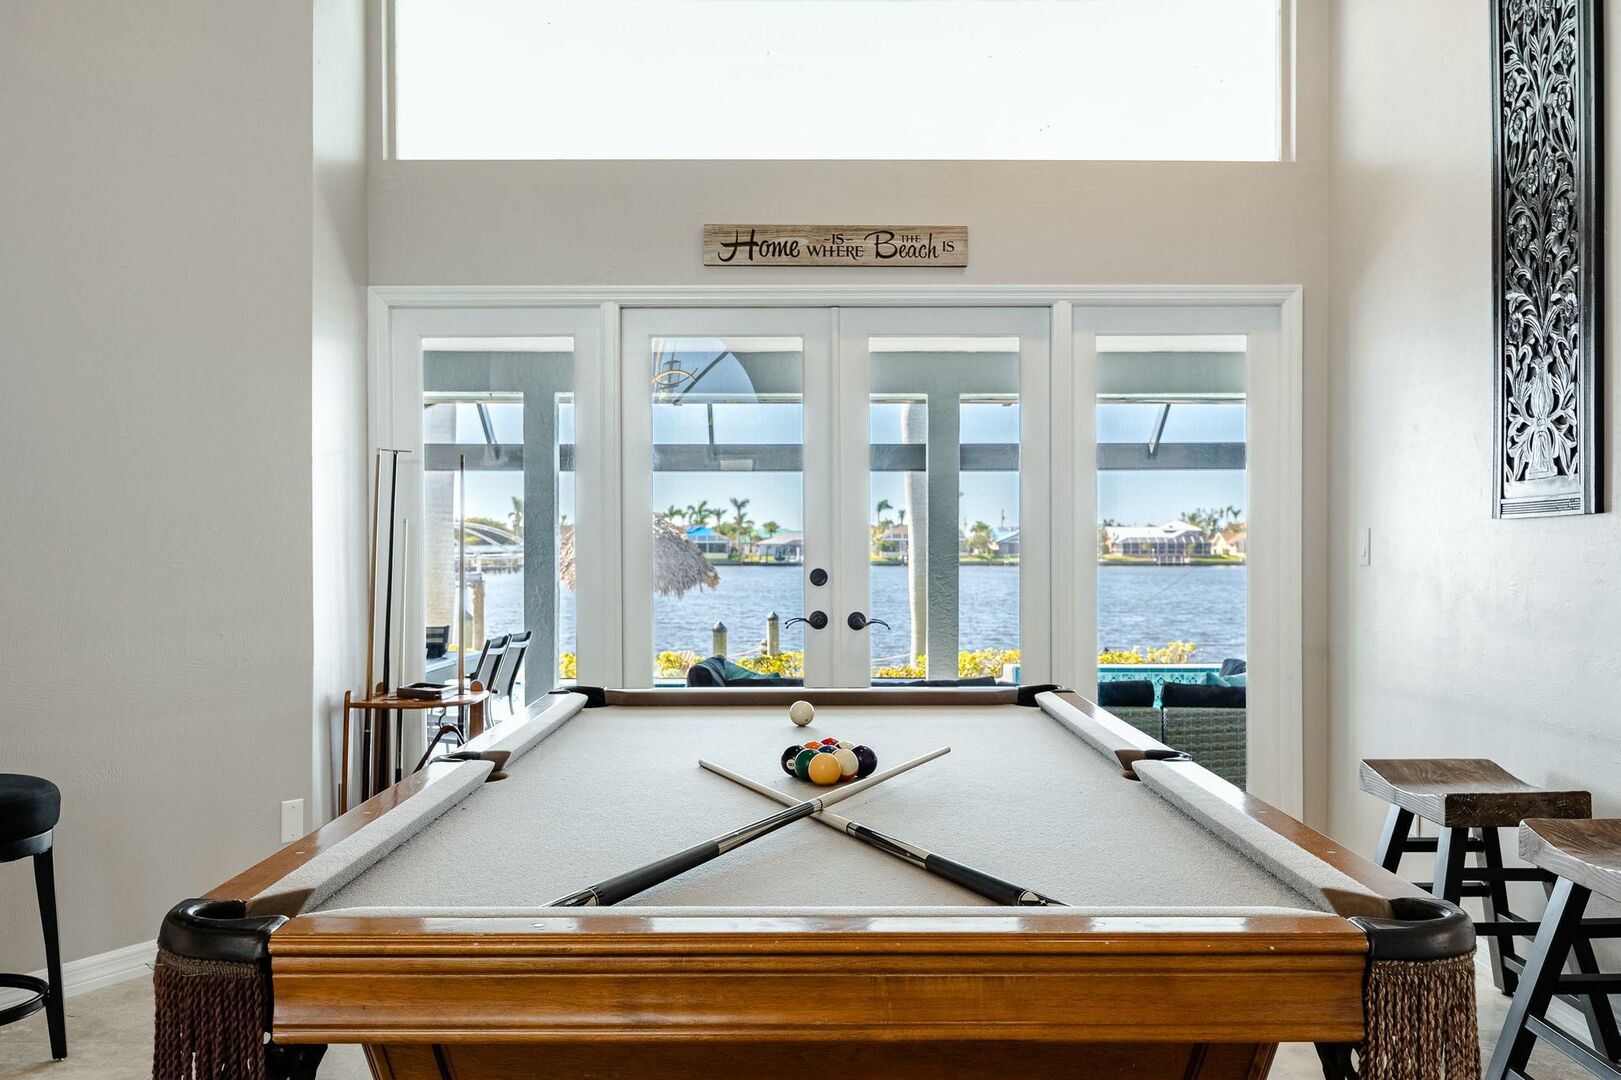 pool table at vacation rental